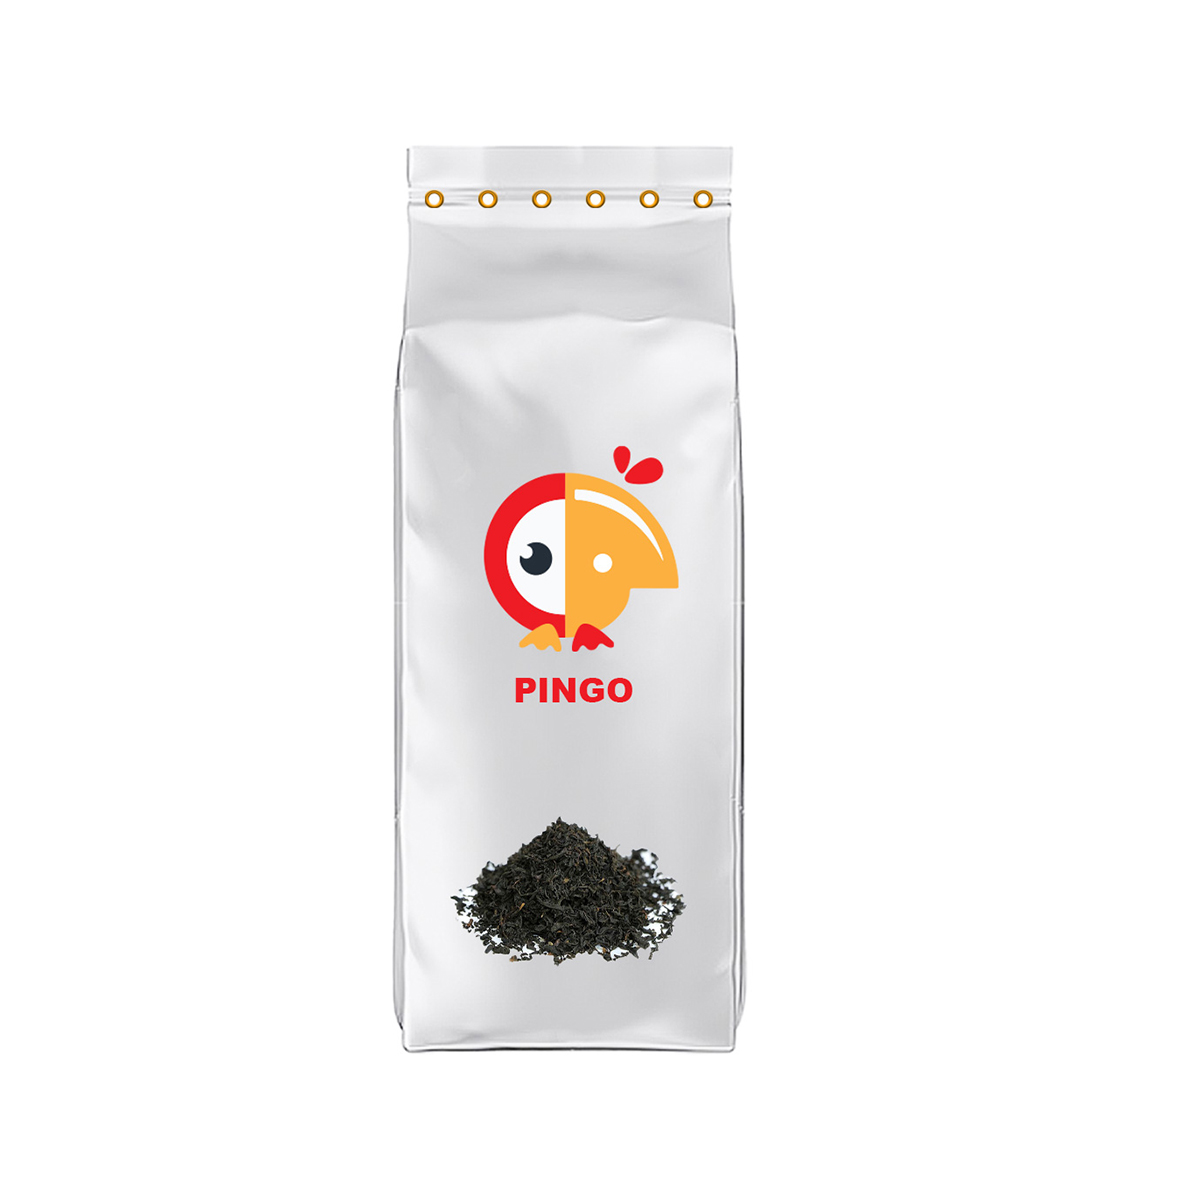 چای نیم ریز سیلان پینگو - 0.5 کیلوگرم